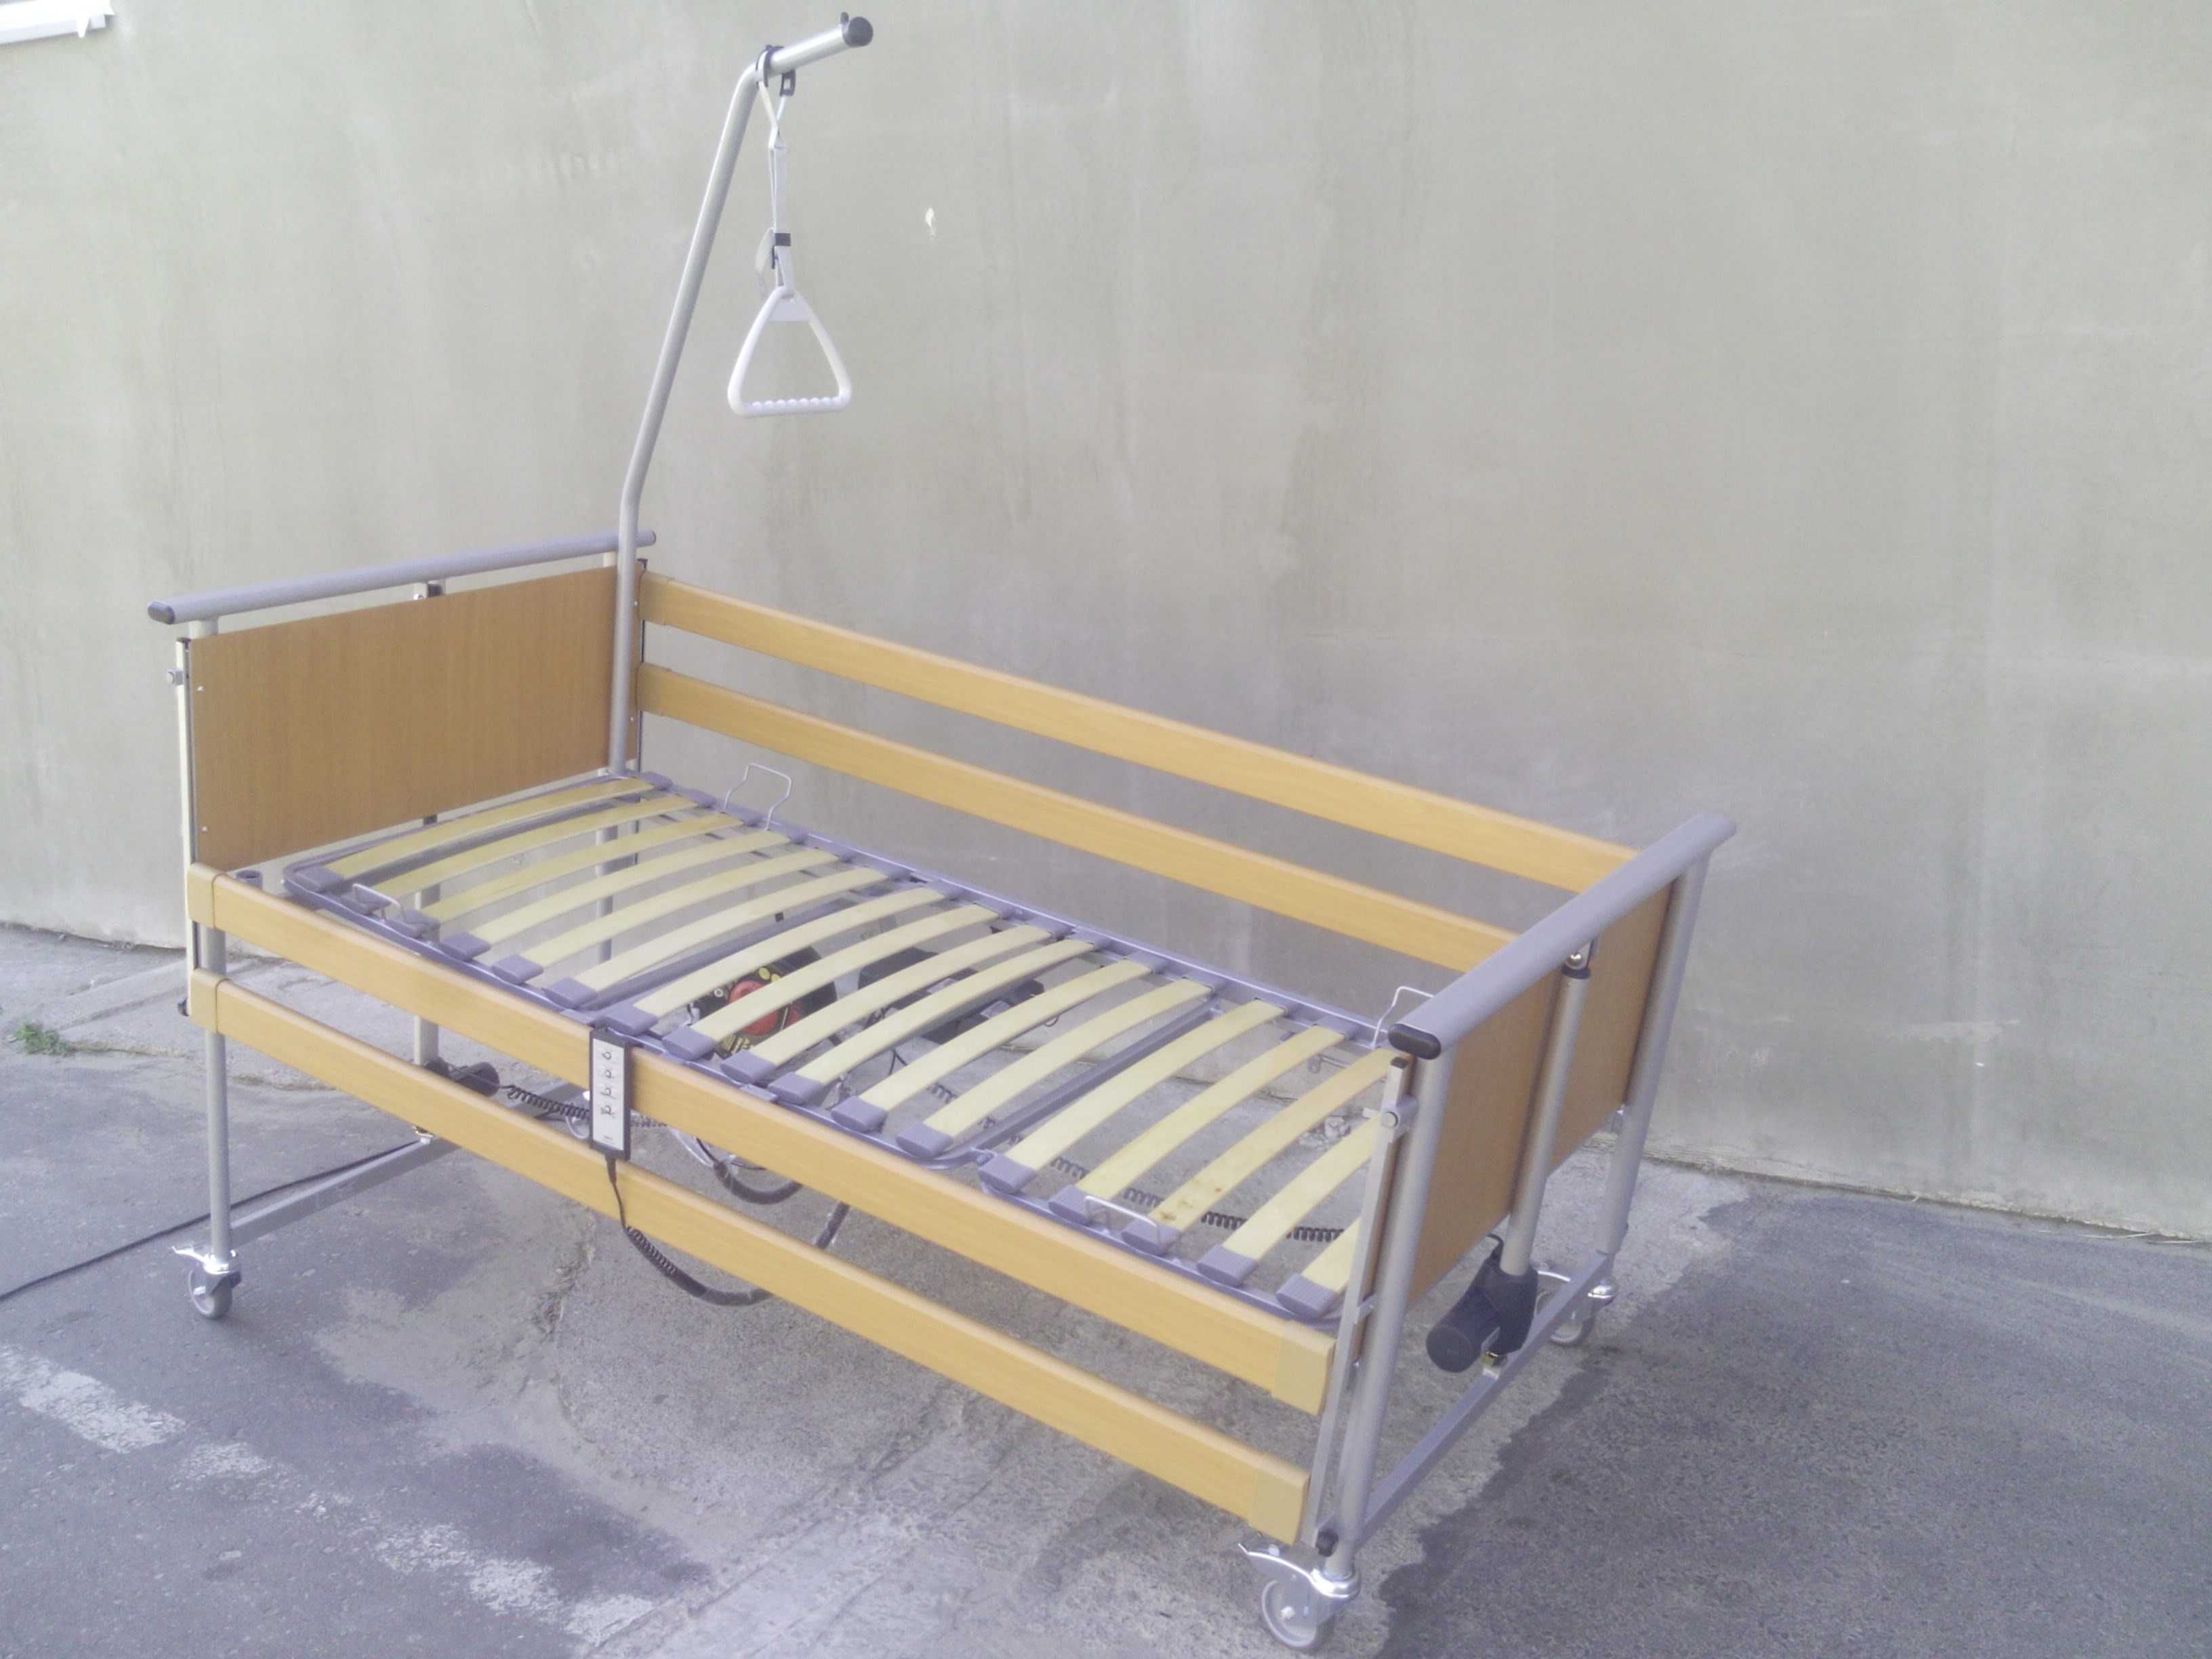 Łóżko rehabilitacyjne Elbur PB 325. Dofinansowanie. Dostawa i montaż